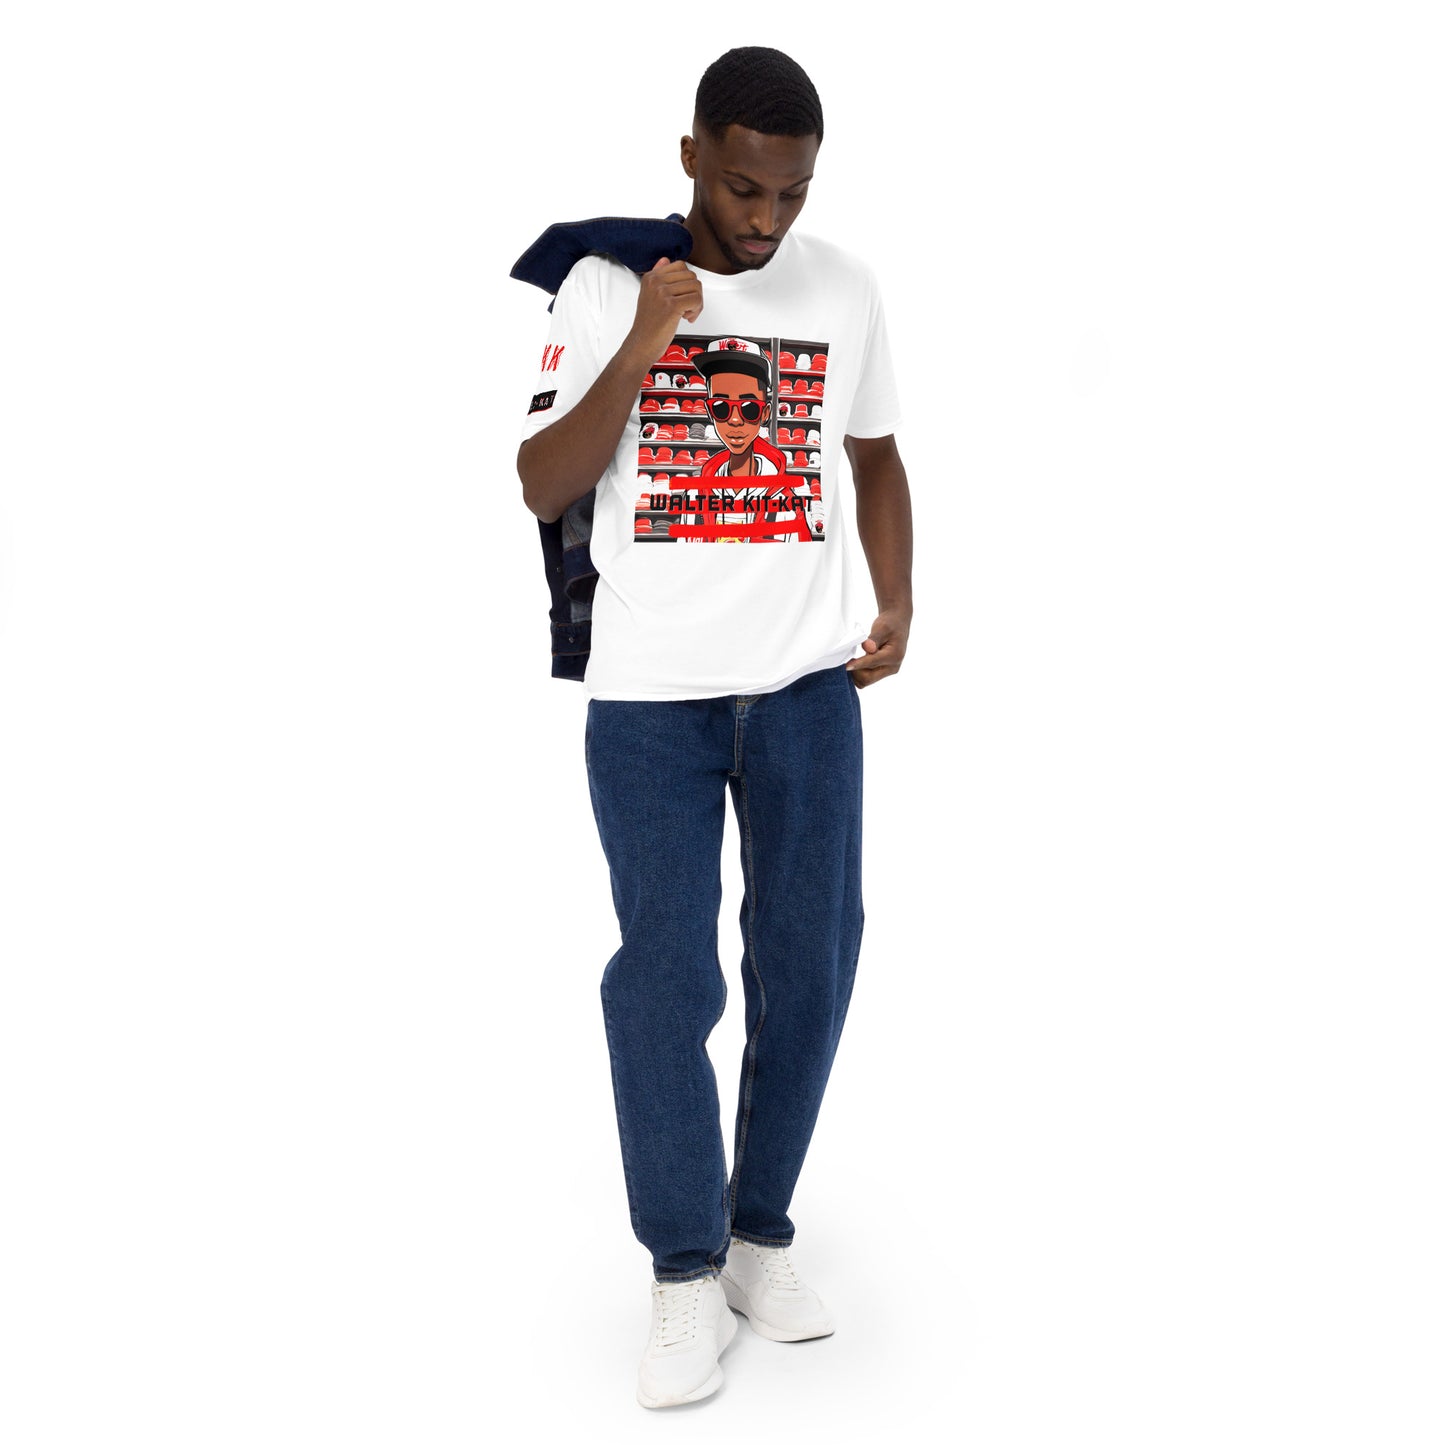 WKK Graphic "Shop" Men's t-shirt